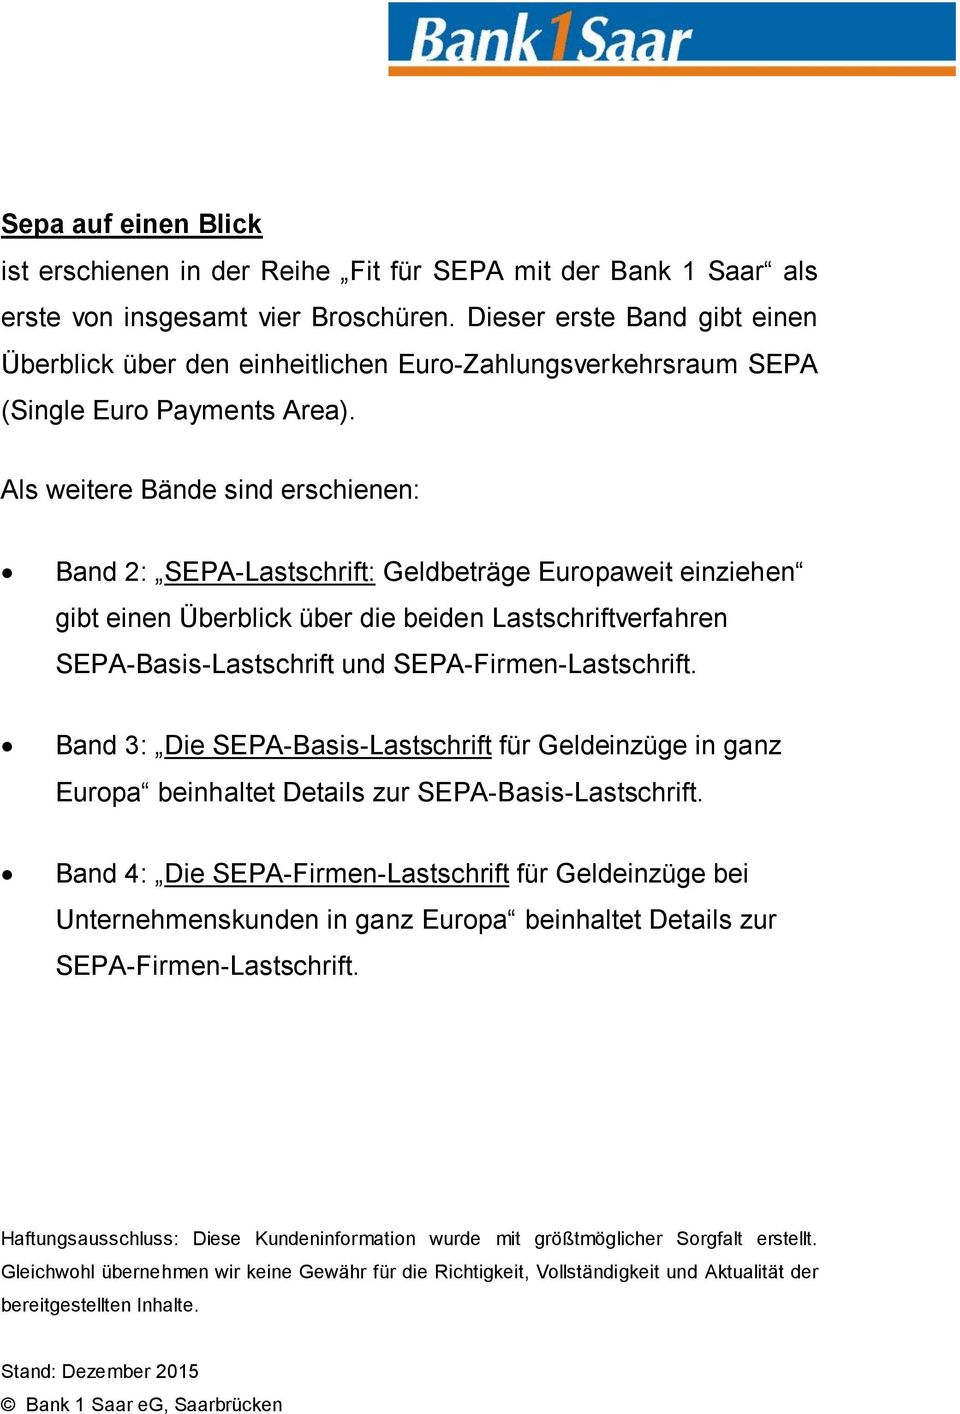 Als weitere Bände sind erschienen: Band 2: SEPA-Lastschrift: Geldbeträge Europaweit einziehen gibt einen Überblick über die beiden Lastschriftverfahren SEPA-Basis-Lastschrift und